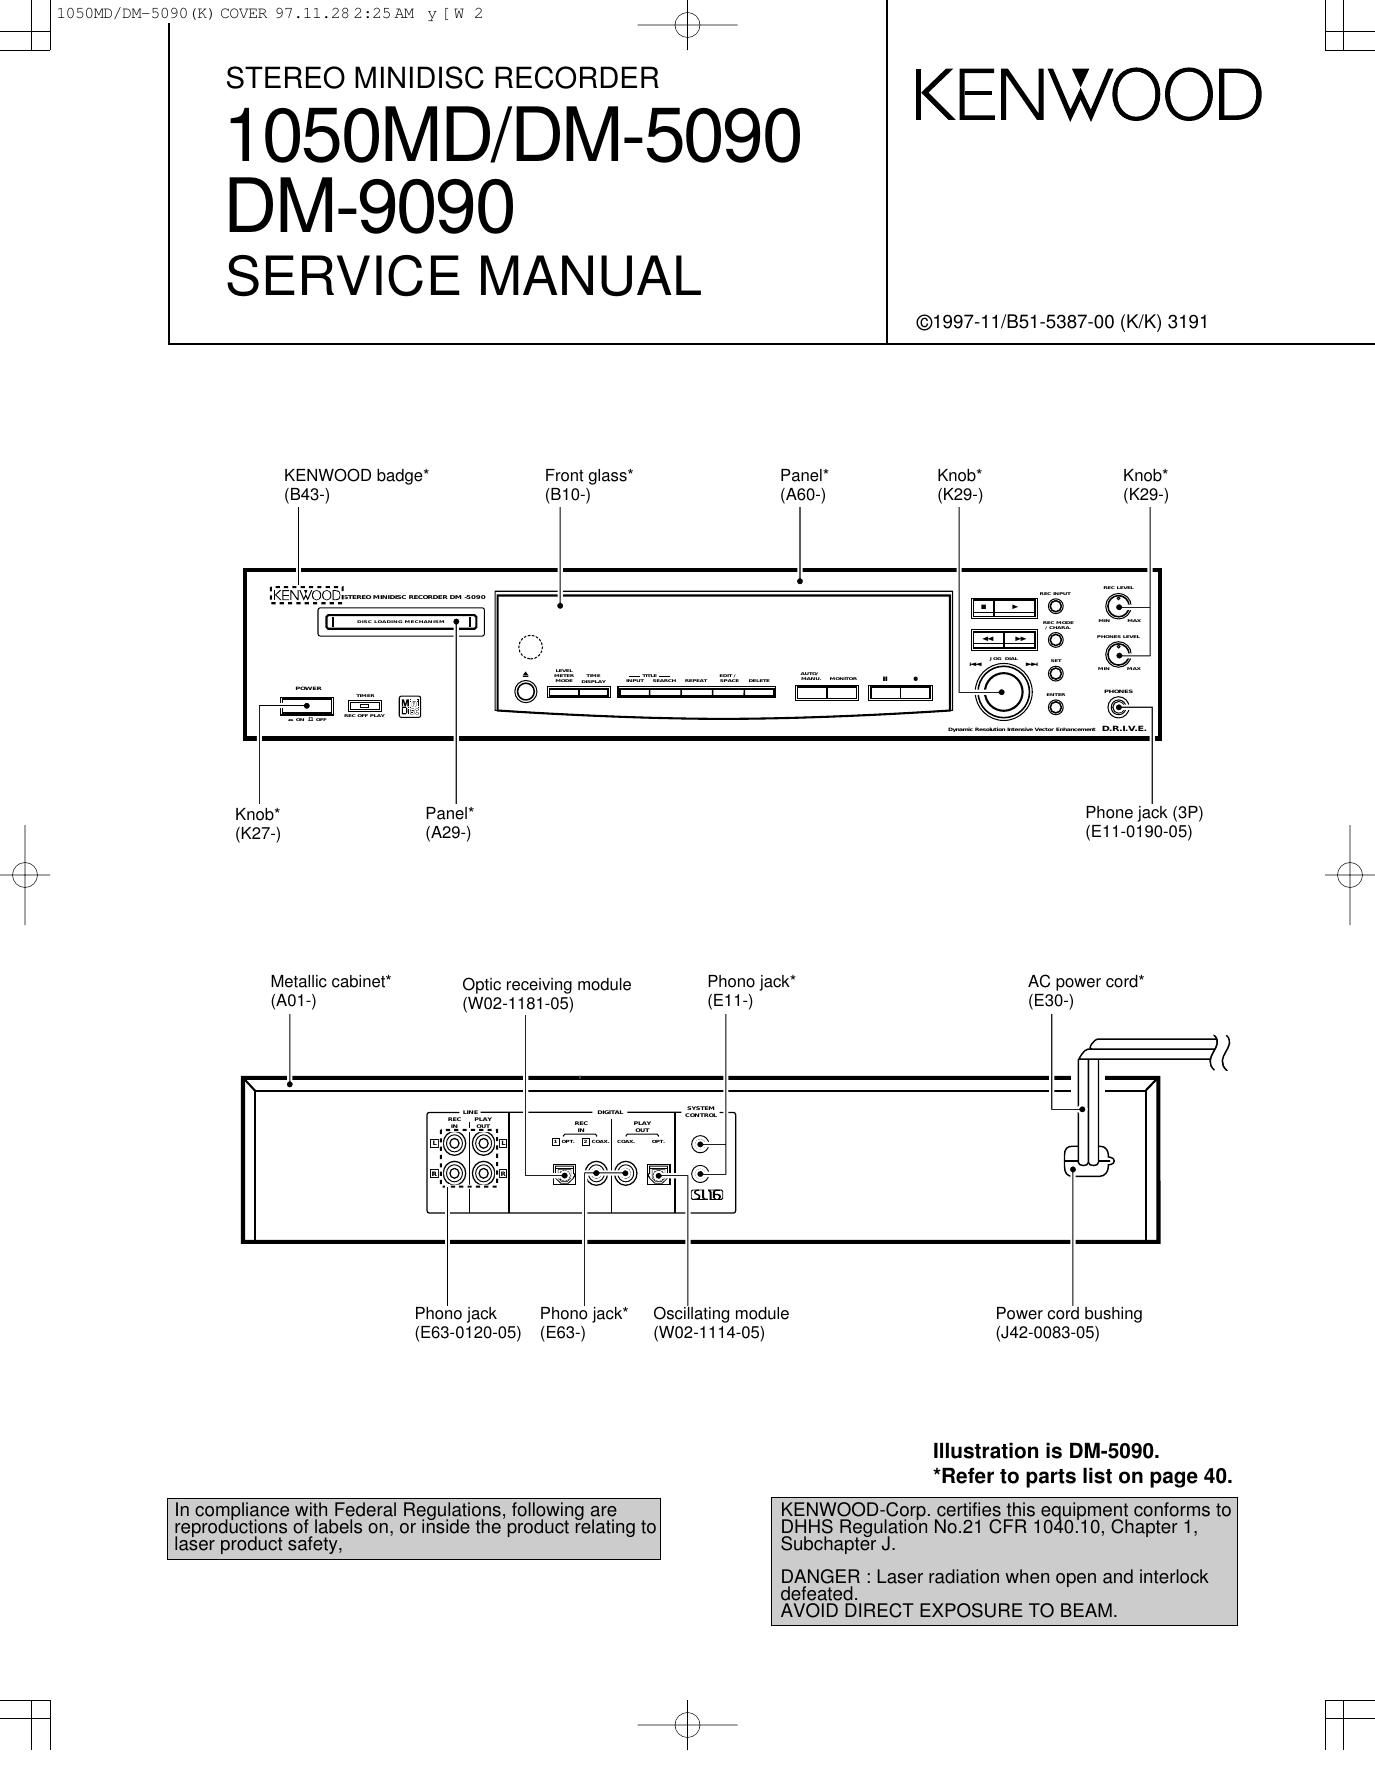 Kenwood DM 9090 Service Manual